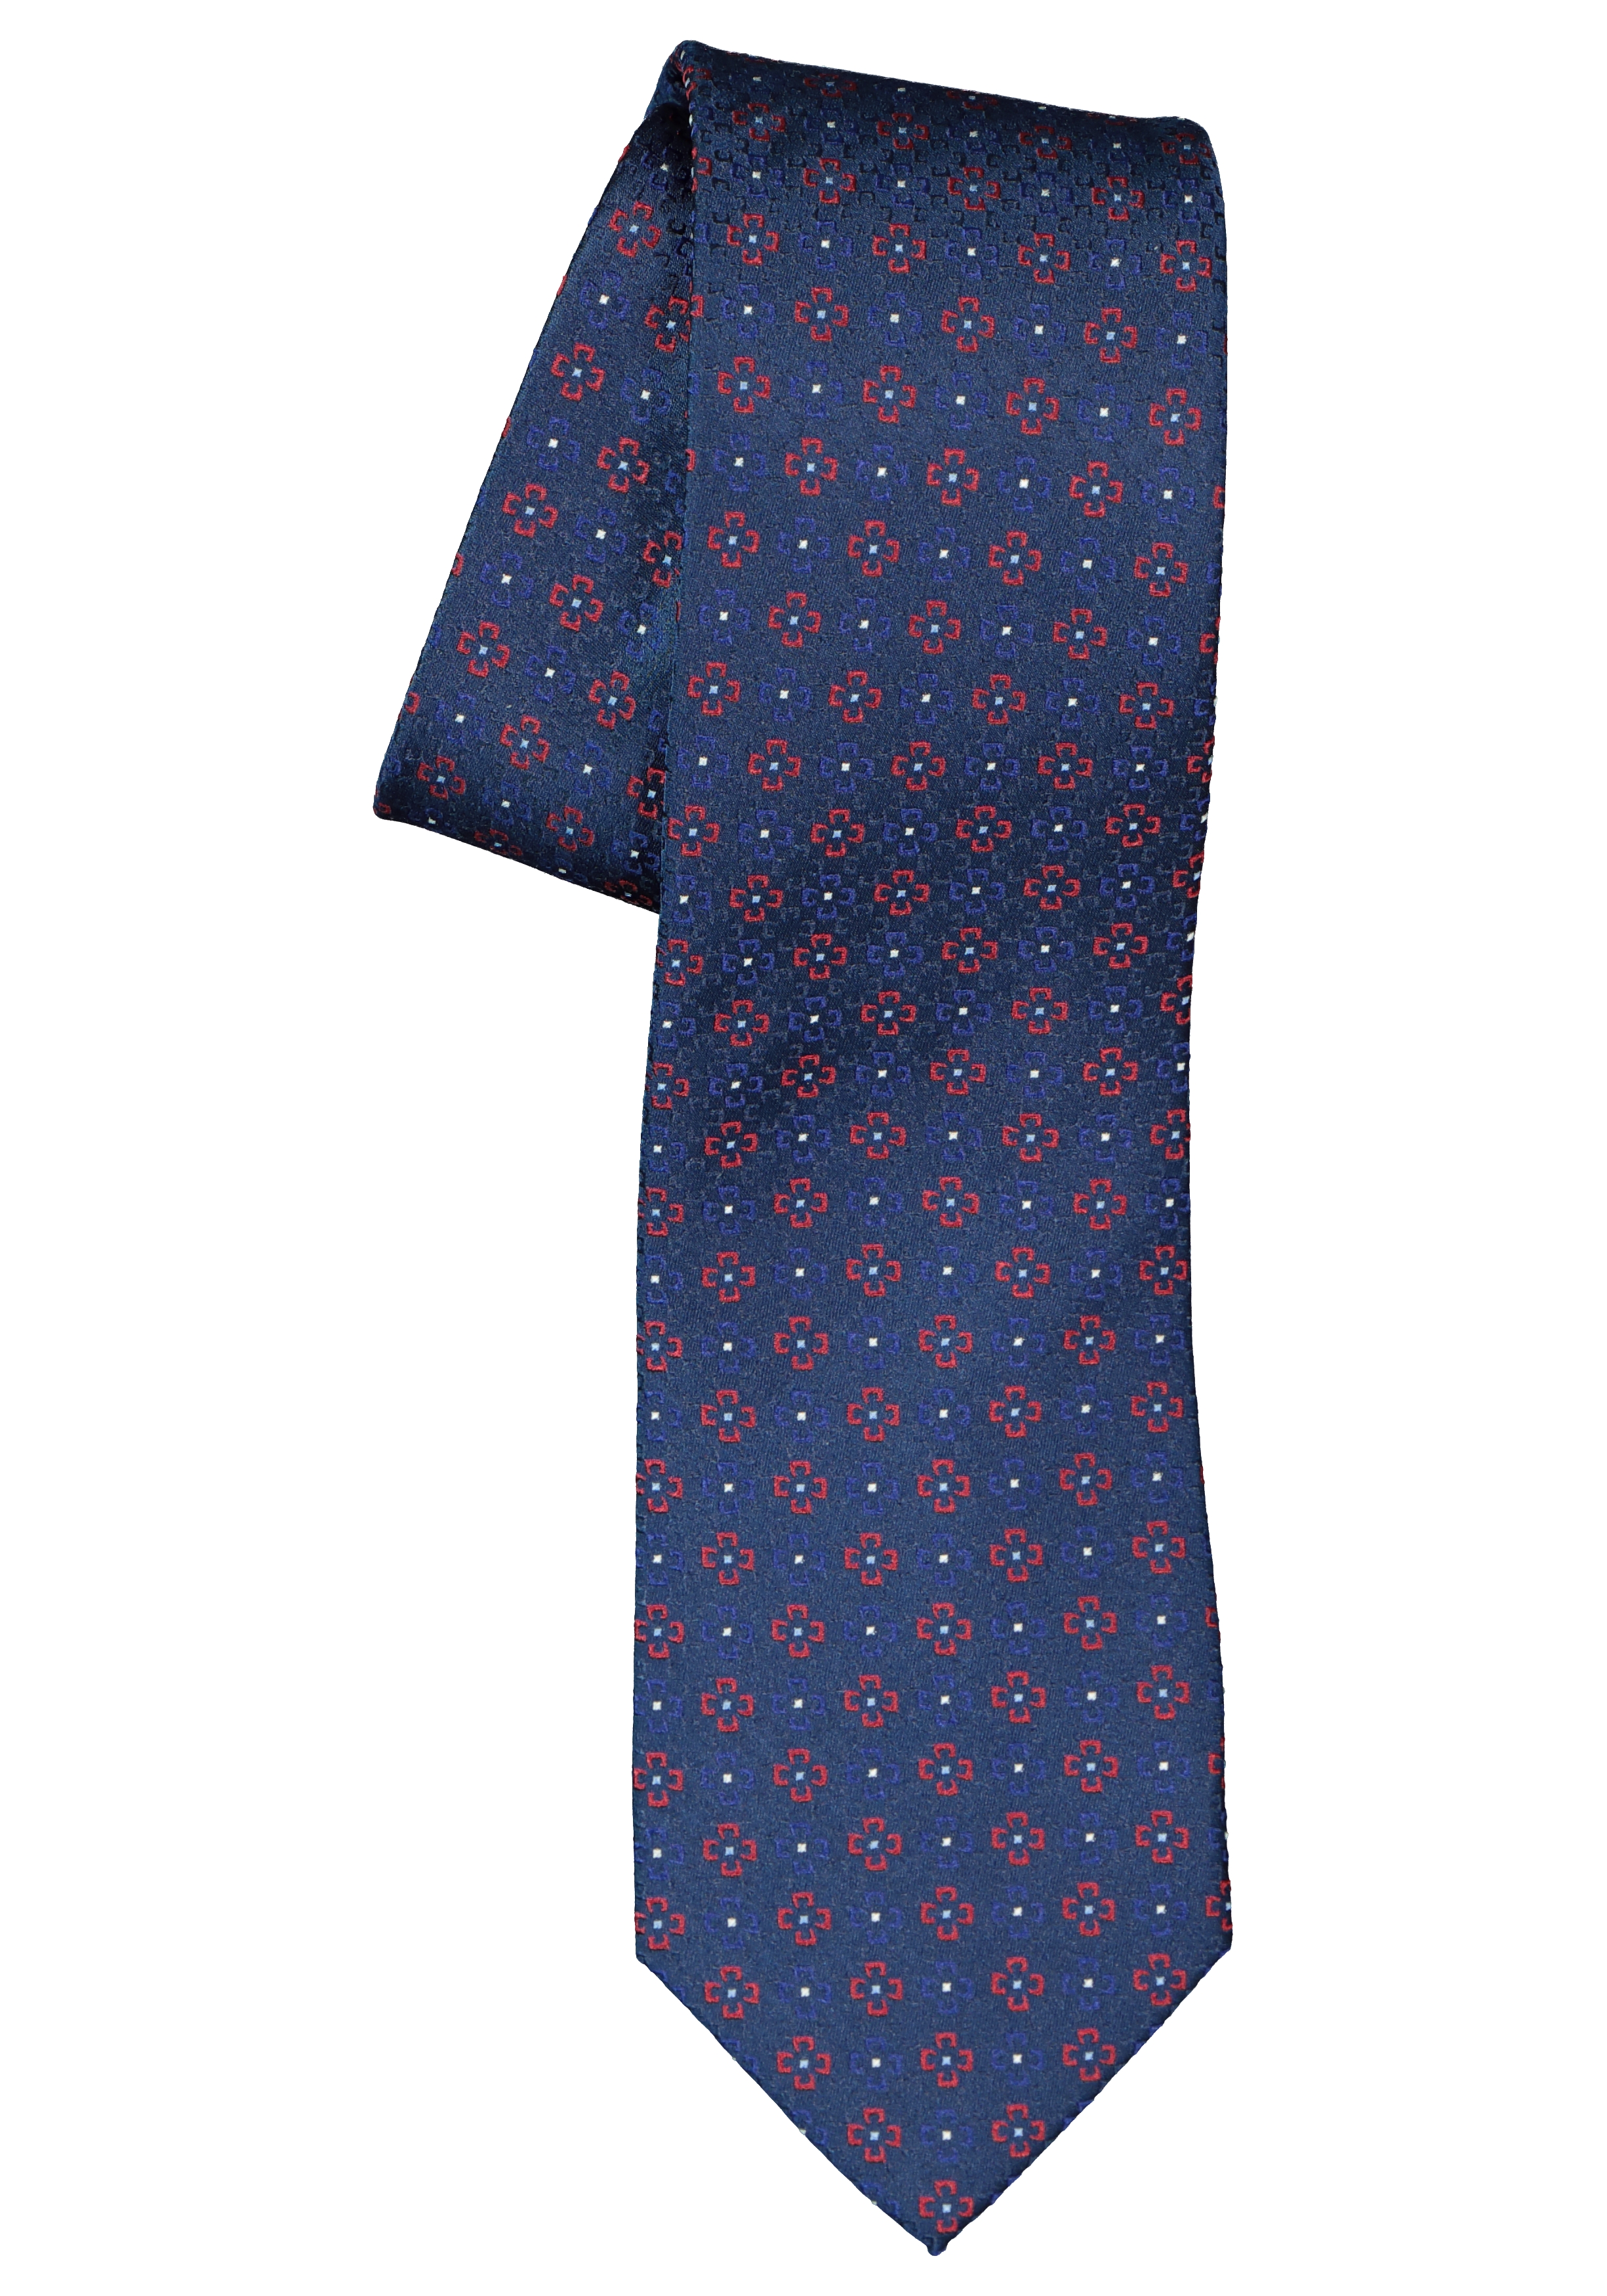 ETERNA stropdas, blauw met rood dessin